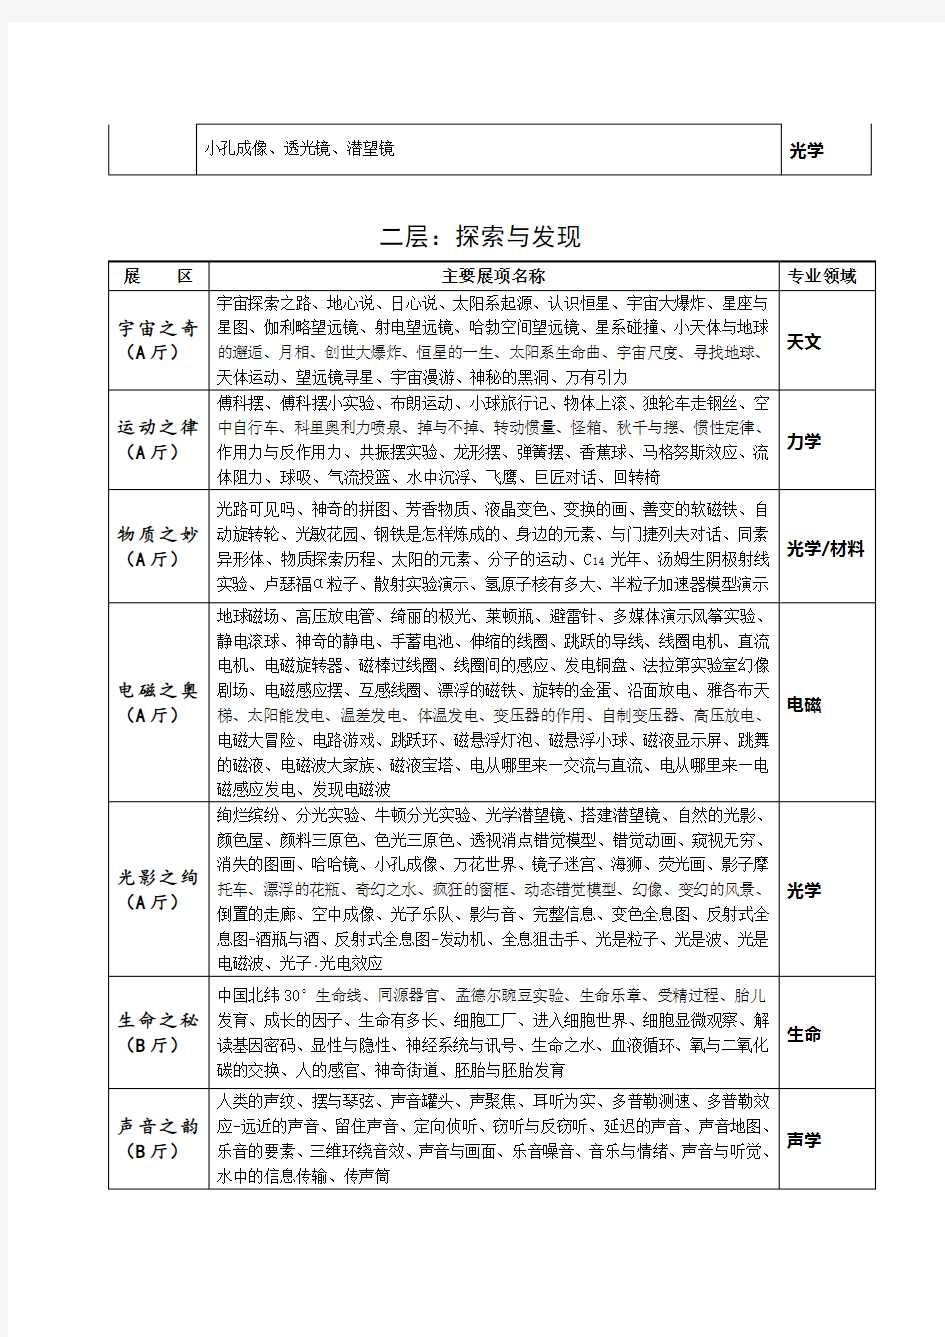 中国科学技术馆主展厅展项及专业领域划分表-中国科技馆